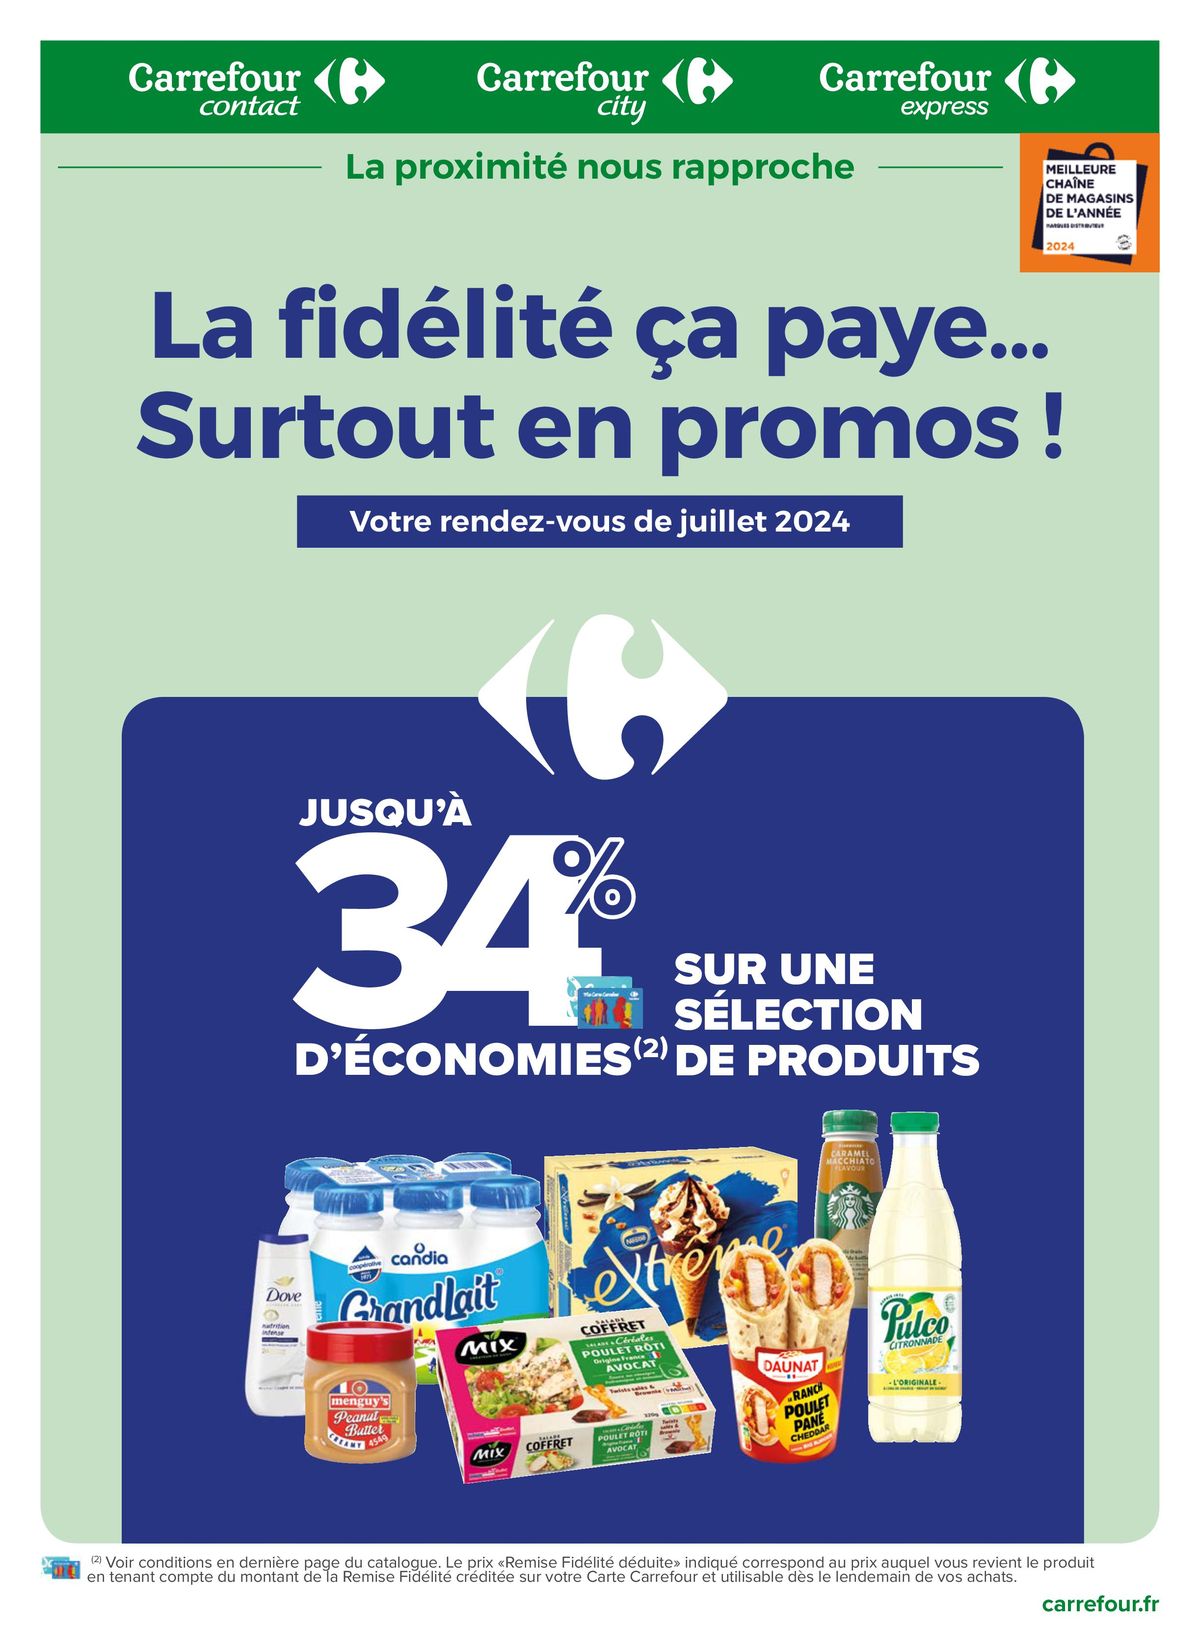 Catalogue La fidélité, ça paye ! Surtout en promos en juillet !, page 00001